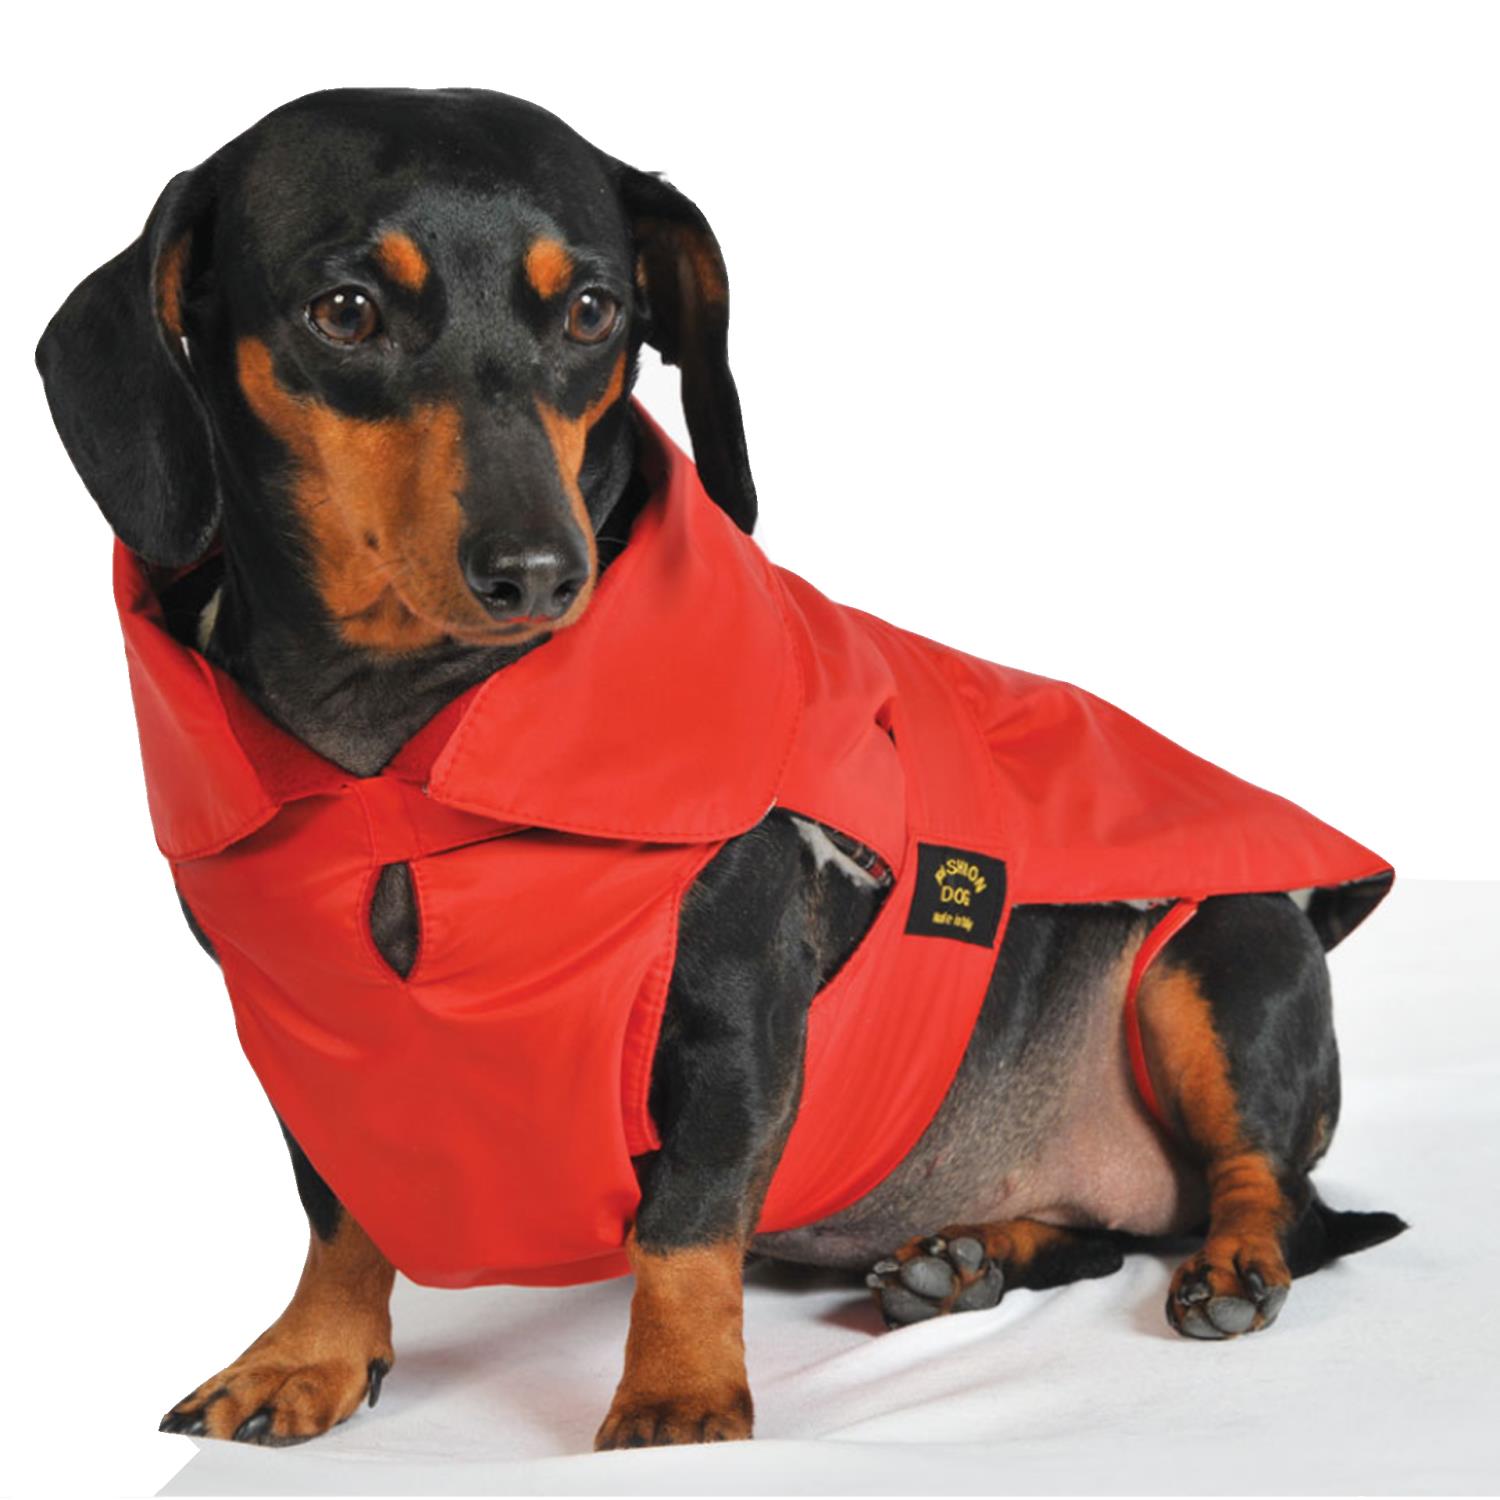 Fashion Dog Regndekken til Dachs med avtagbart fôr, Rød | Flere størrelser (33-47)